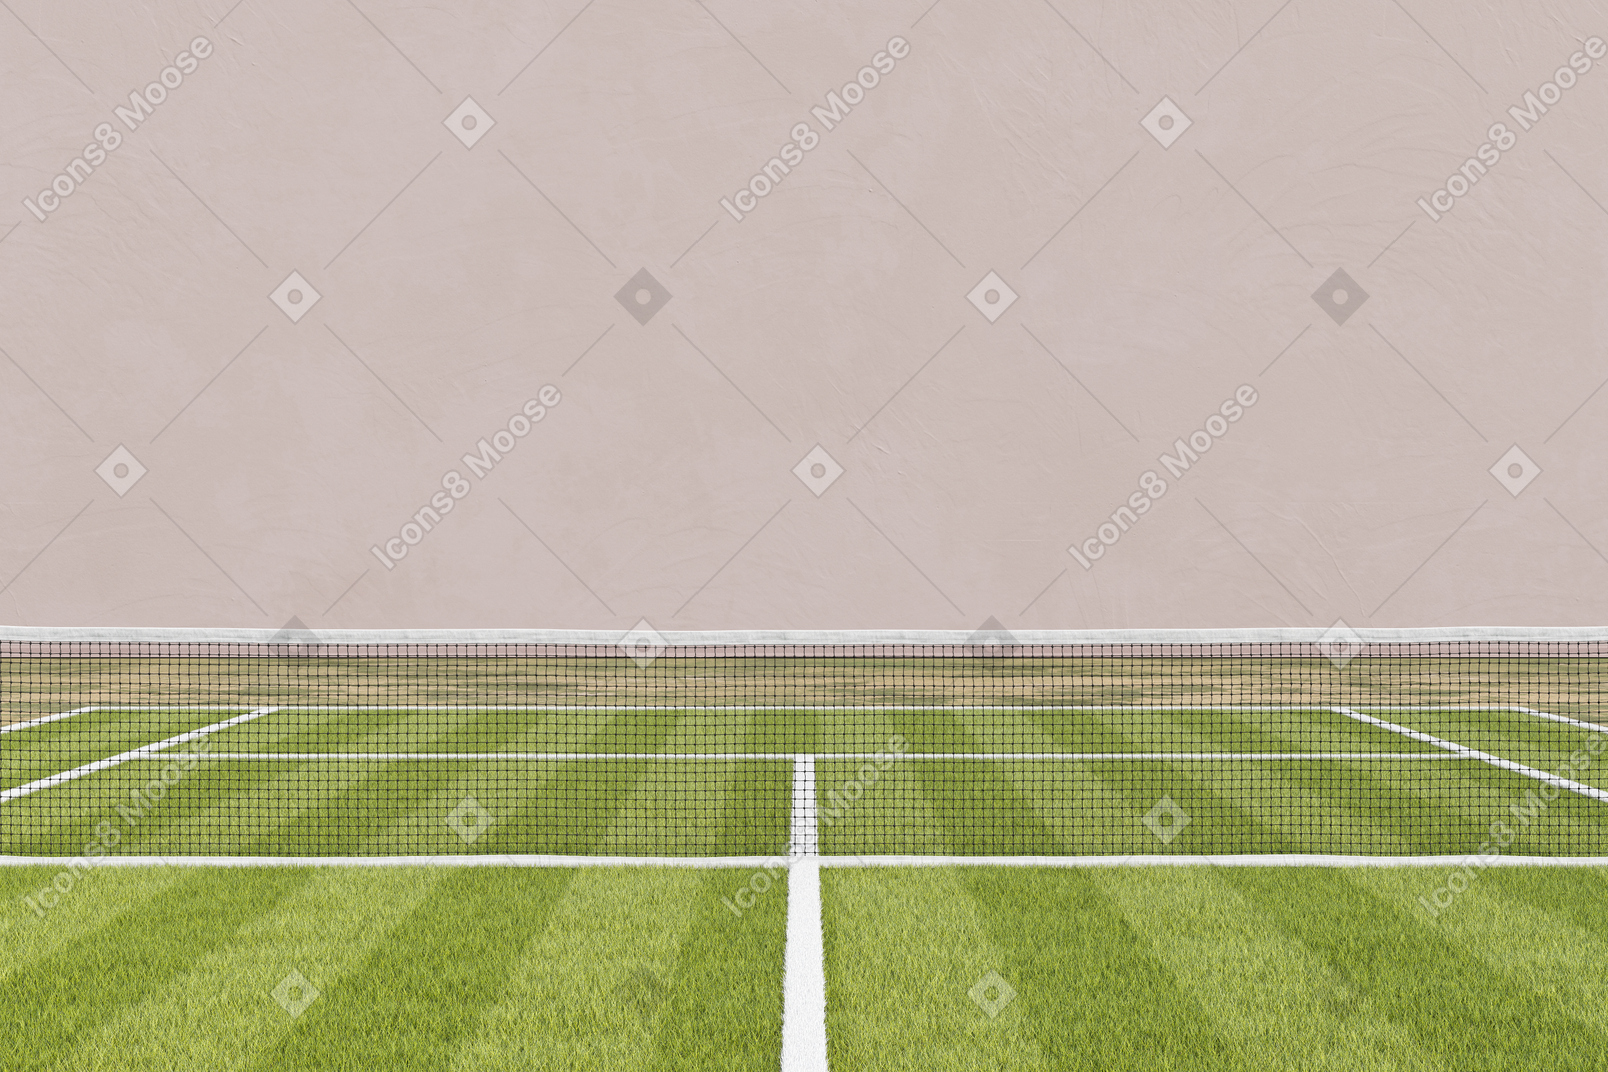 테니스 네트가 있는 잔디 테니스 코트